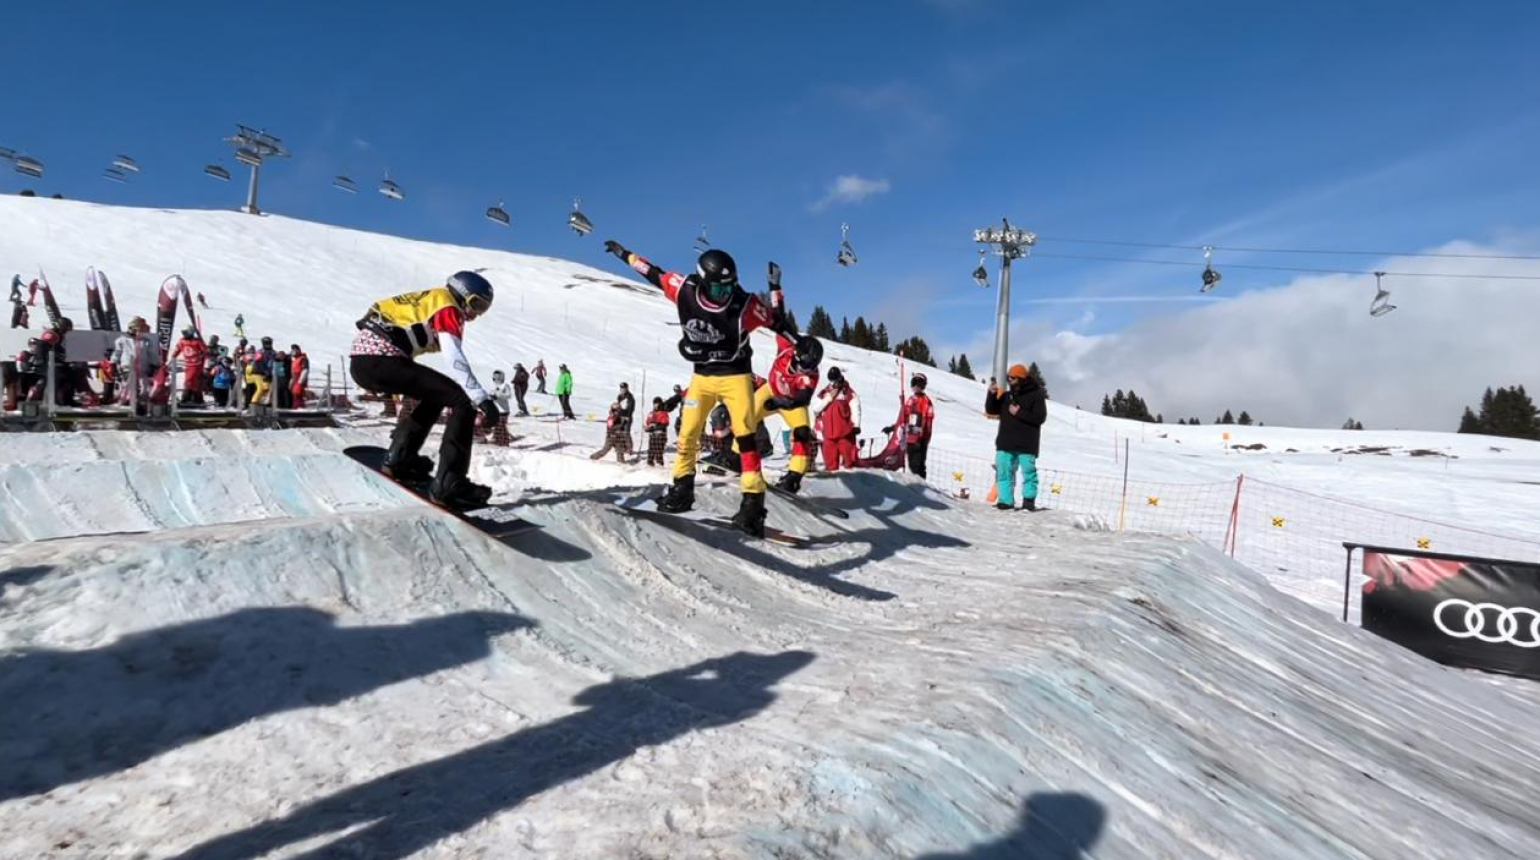 Uplynulý týden snowboardcrossařů: Kryštof Choura dojel šestý na Evropském poháru, dařilo se i juniorům ve Švýcarsku